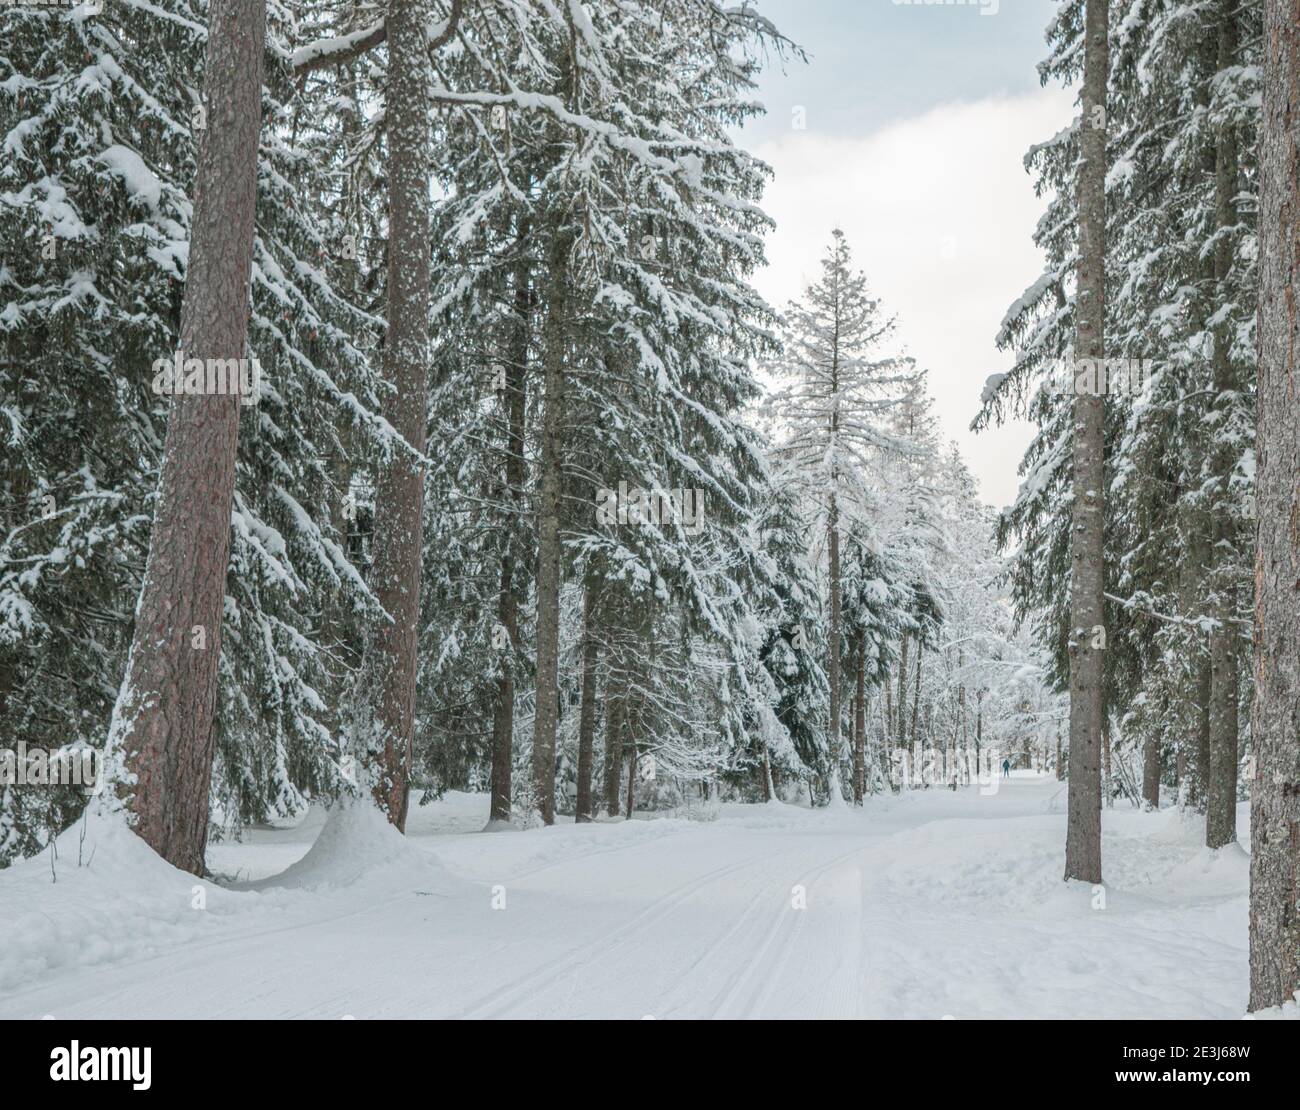 Árboles cargados de nieve en un bosque de invierno. Los árboles están cubiertos de nieve fresca en un país de las maravillas del invierno en los alpes franceses. Foto de stock